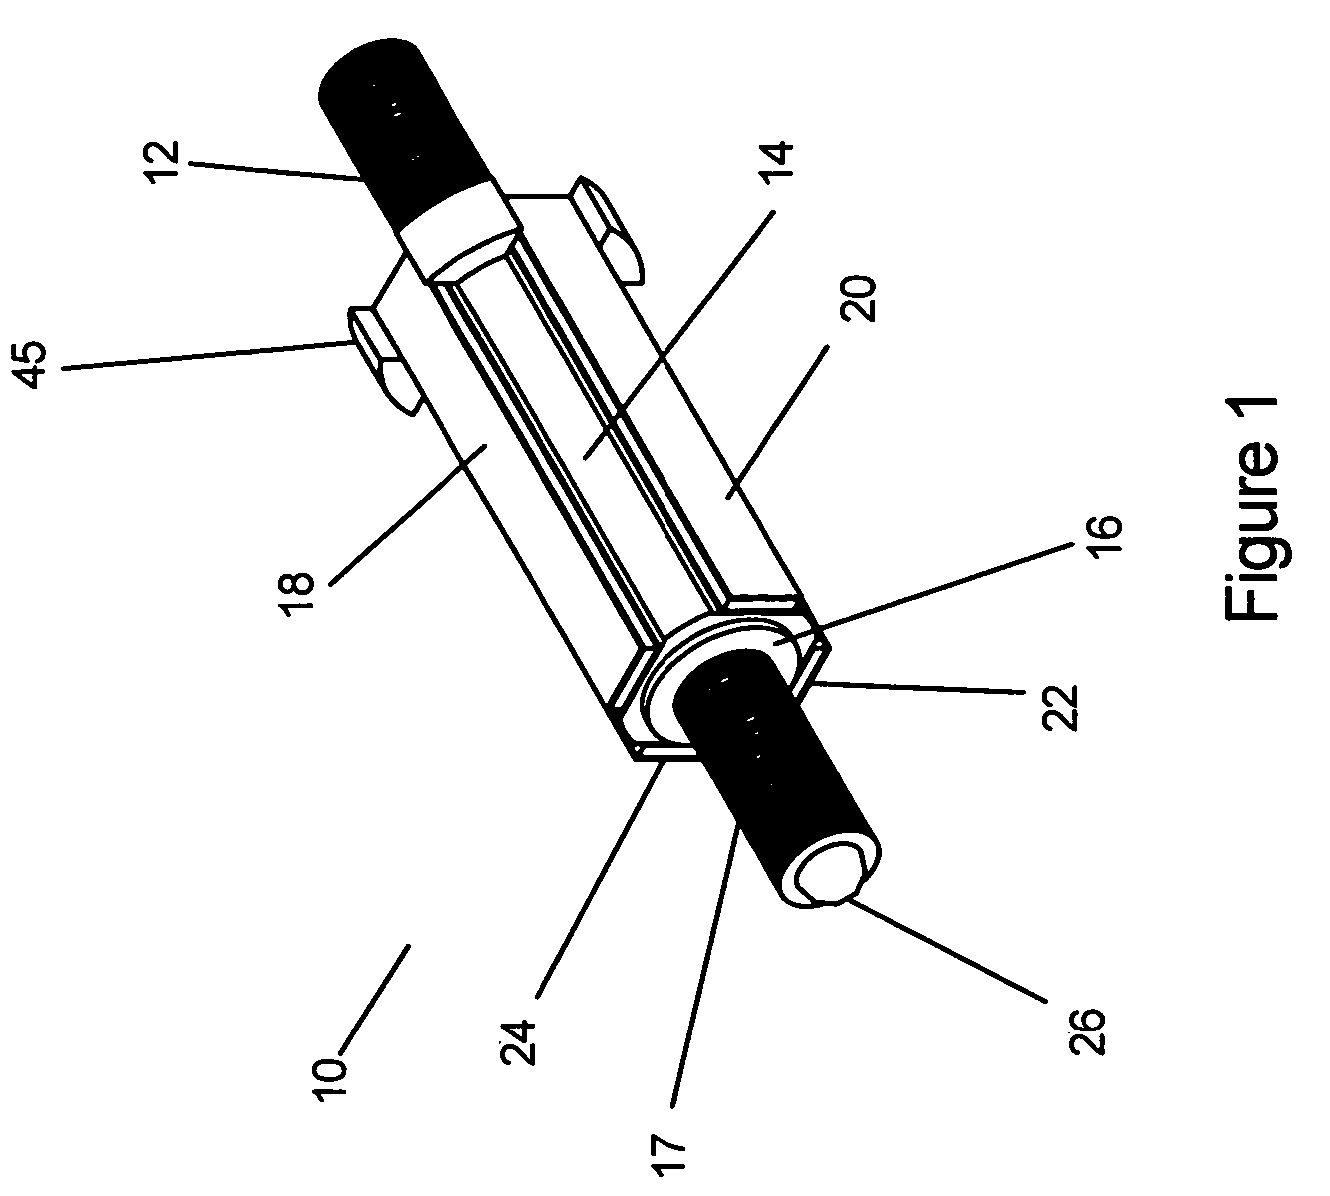 Mechanism comprised of ultrasonic lead screw motor